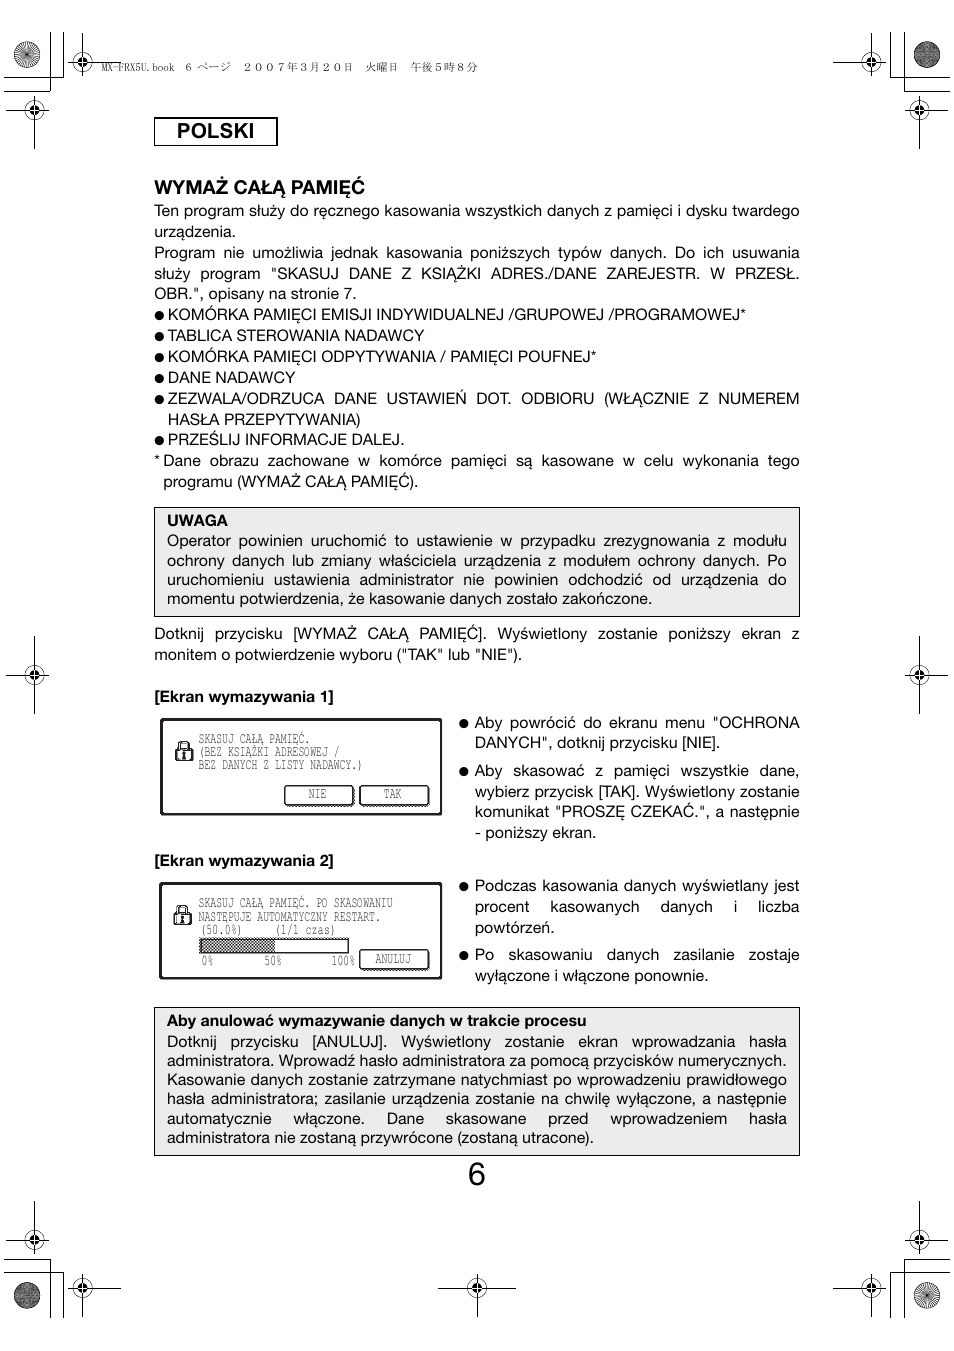 Polski, Wymaż całą pamięć | Sharp Funkcja identyfikacji użytkownika User Manual | Page 140 / 184